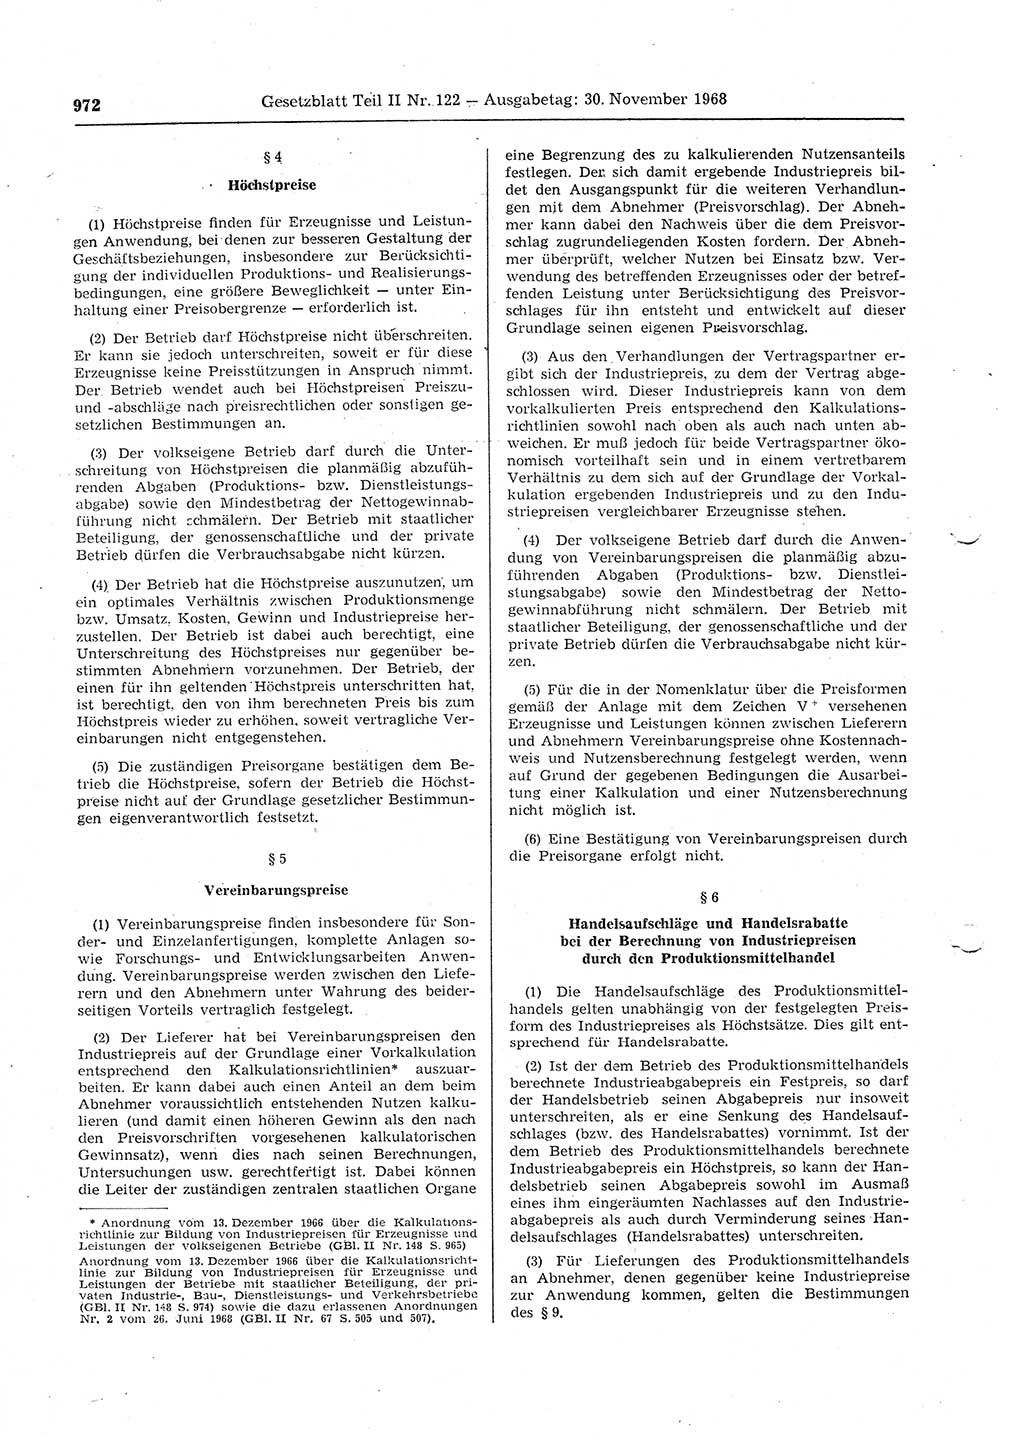 Gesetzblatt (GBl.) der Deutschen Demokratischen Republik (DDR) Teil ⅠⅠ 1968, Seite 972 (GBl. DDR ⅠⅠ 1968, S. 972)